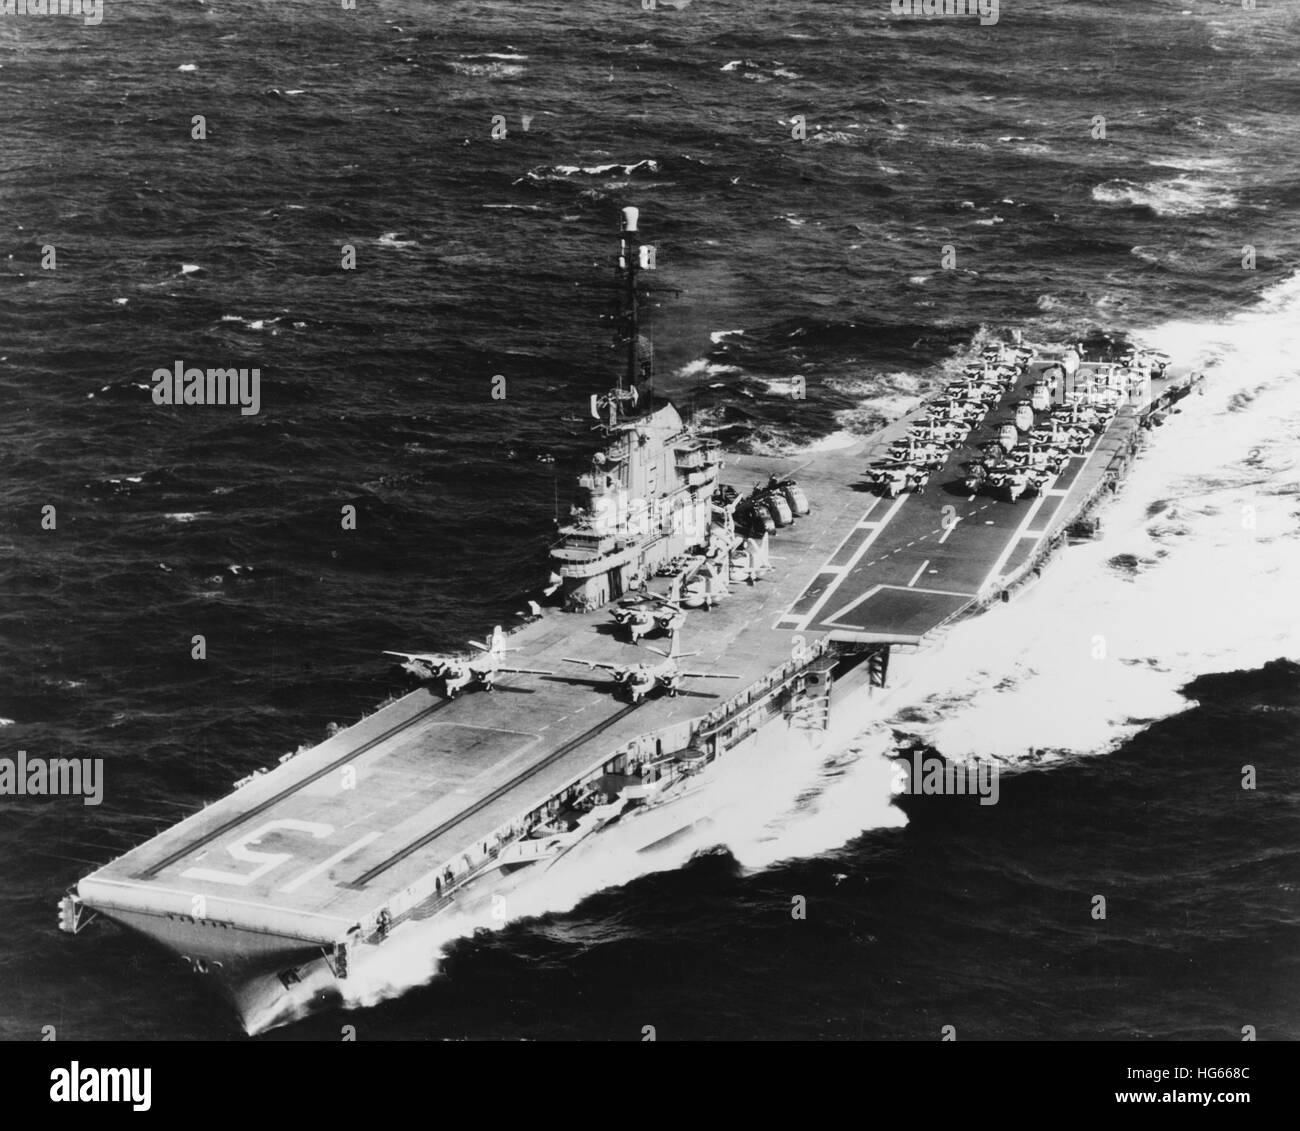 USS Randolph en cours en mer avec deux avions S2F sur ses catapultes, 1962. Banque D'Images